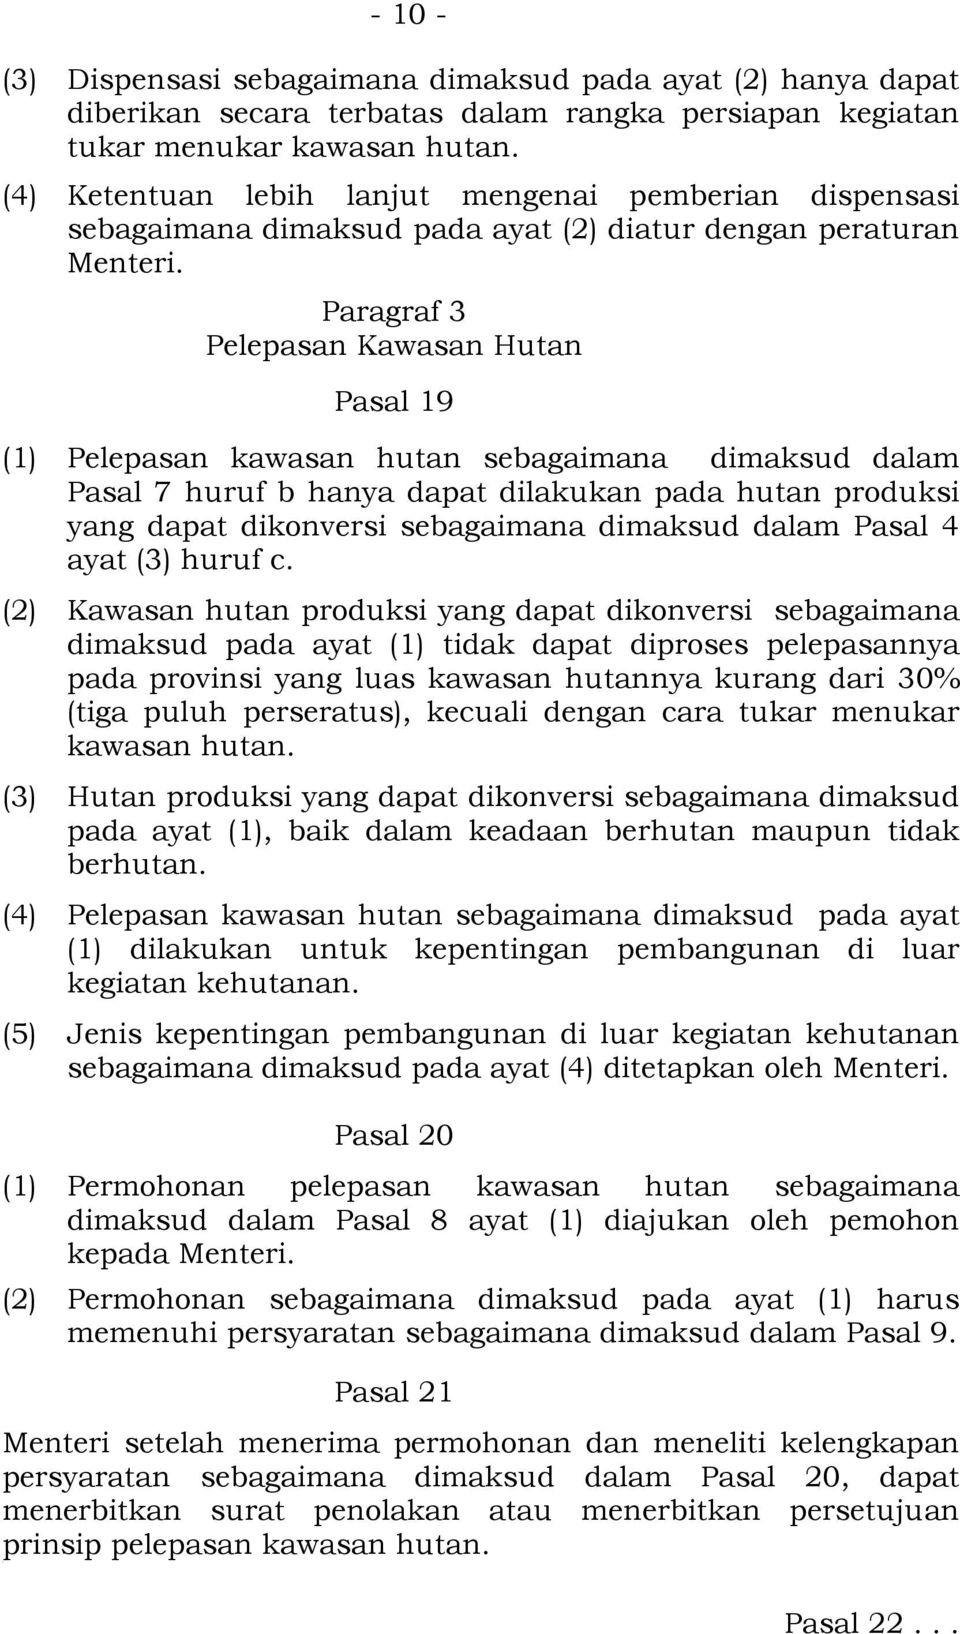 Paragraf 3 Pelepasan Kawasan Hutan Pasal 19 (1) Pelepasan kawasan hutan sebagaimana dimaksud dalam Pasal 7 huruf b hanya dapat dilakukan pada hutan produksi yang dapat dikonversi sebagaimana dimaksud